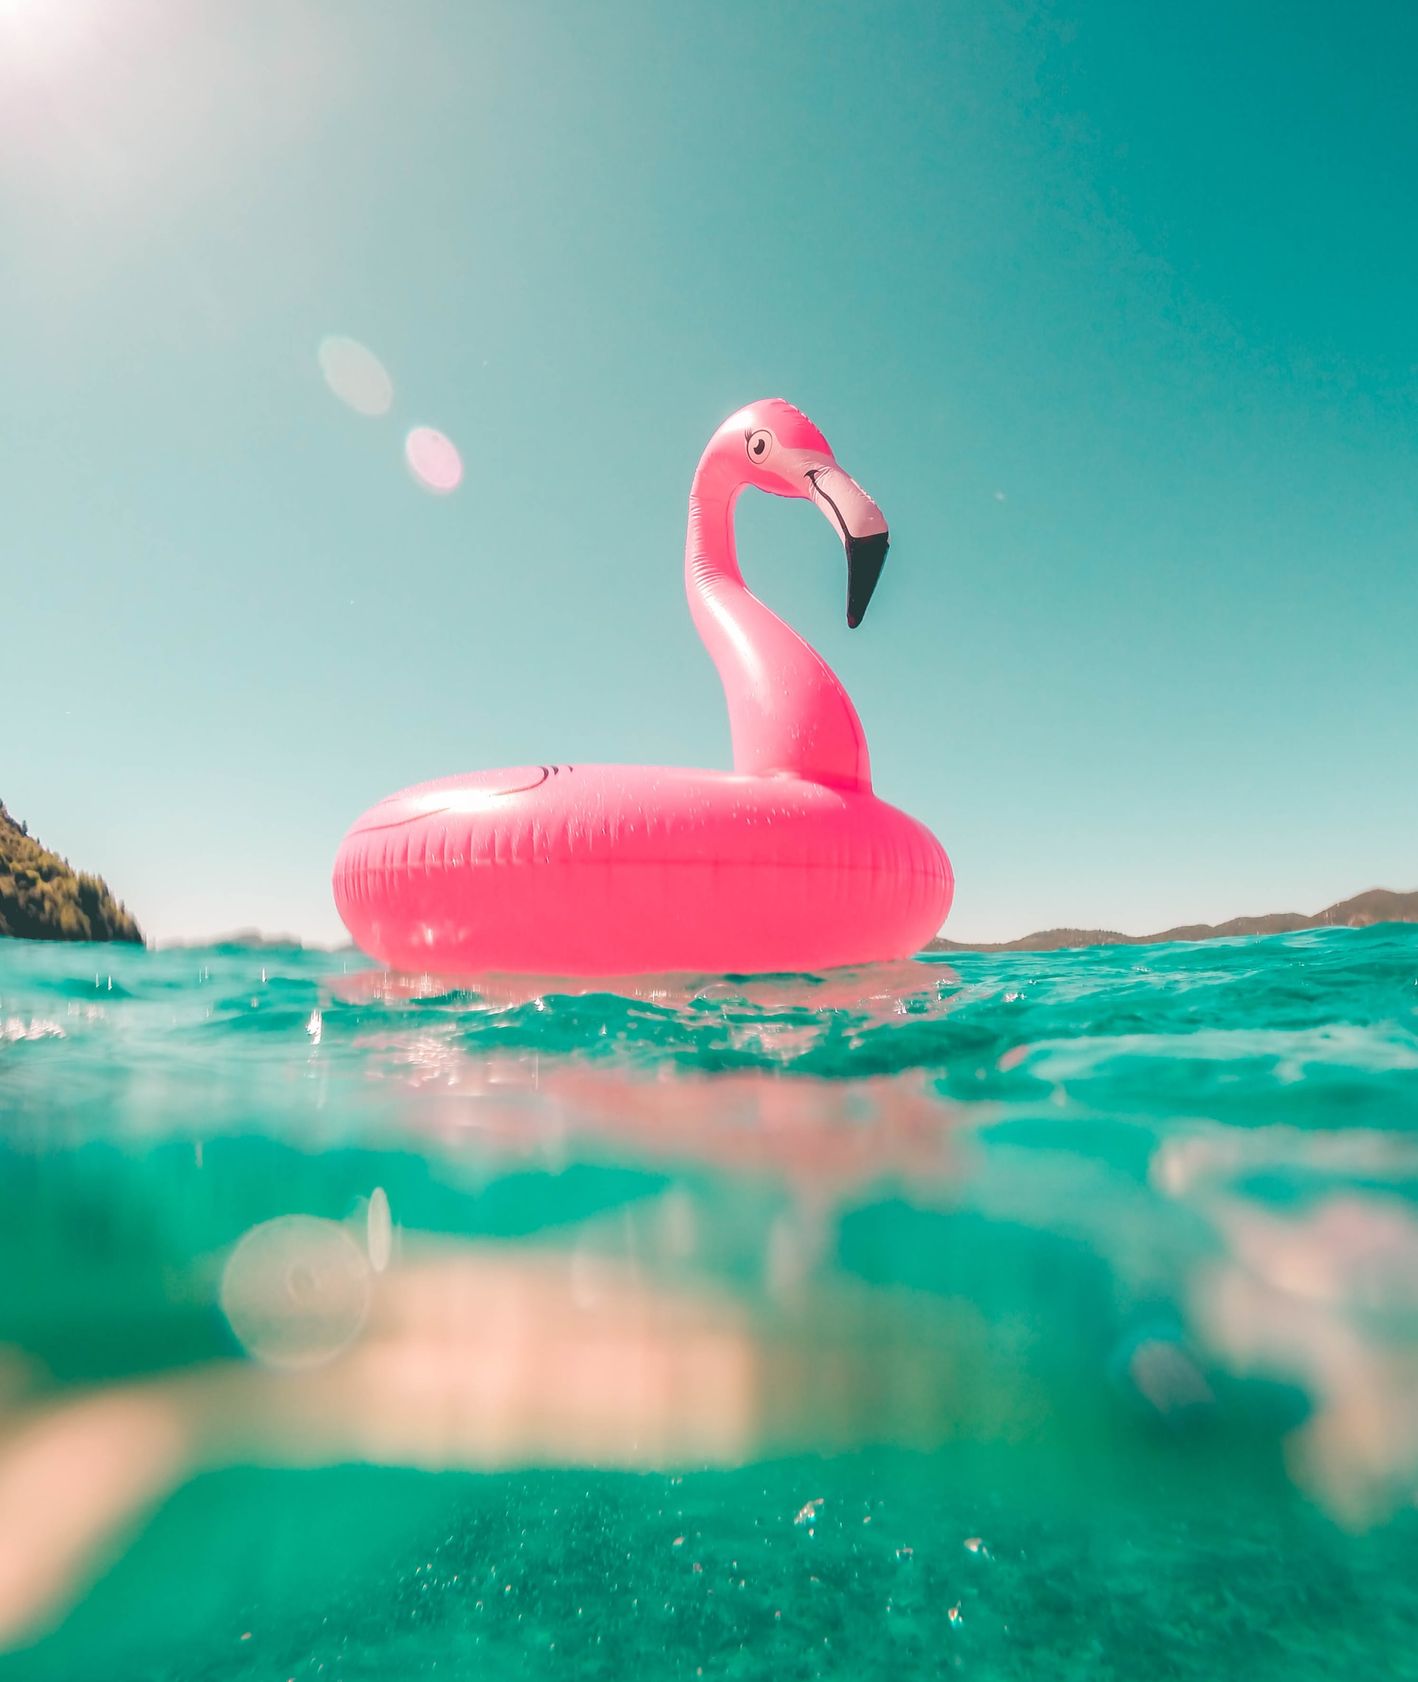 Koło do pływania w kształcie flaminga pływające na morzu (fot. Vicko-Mozara / unsplash)